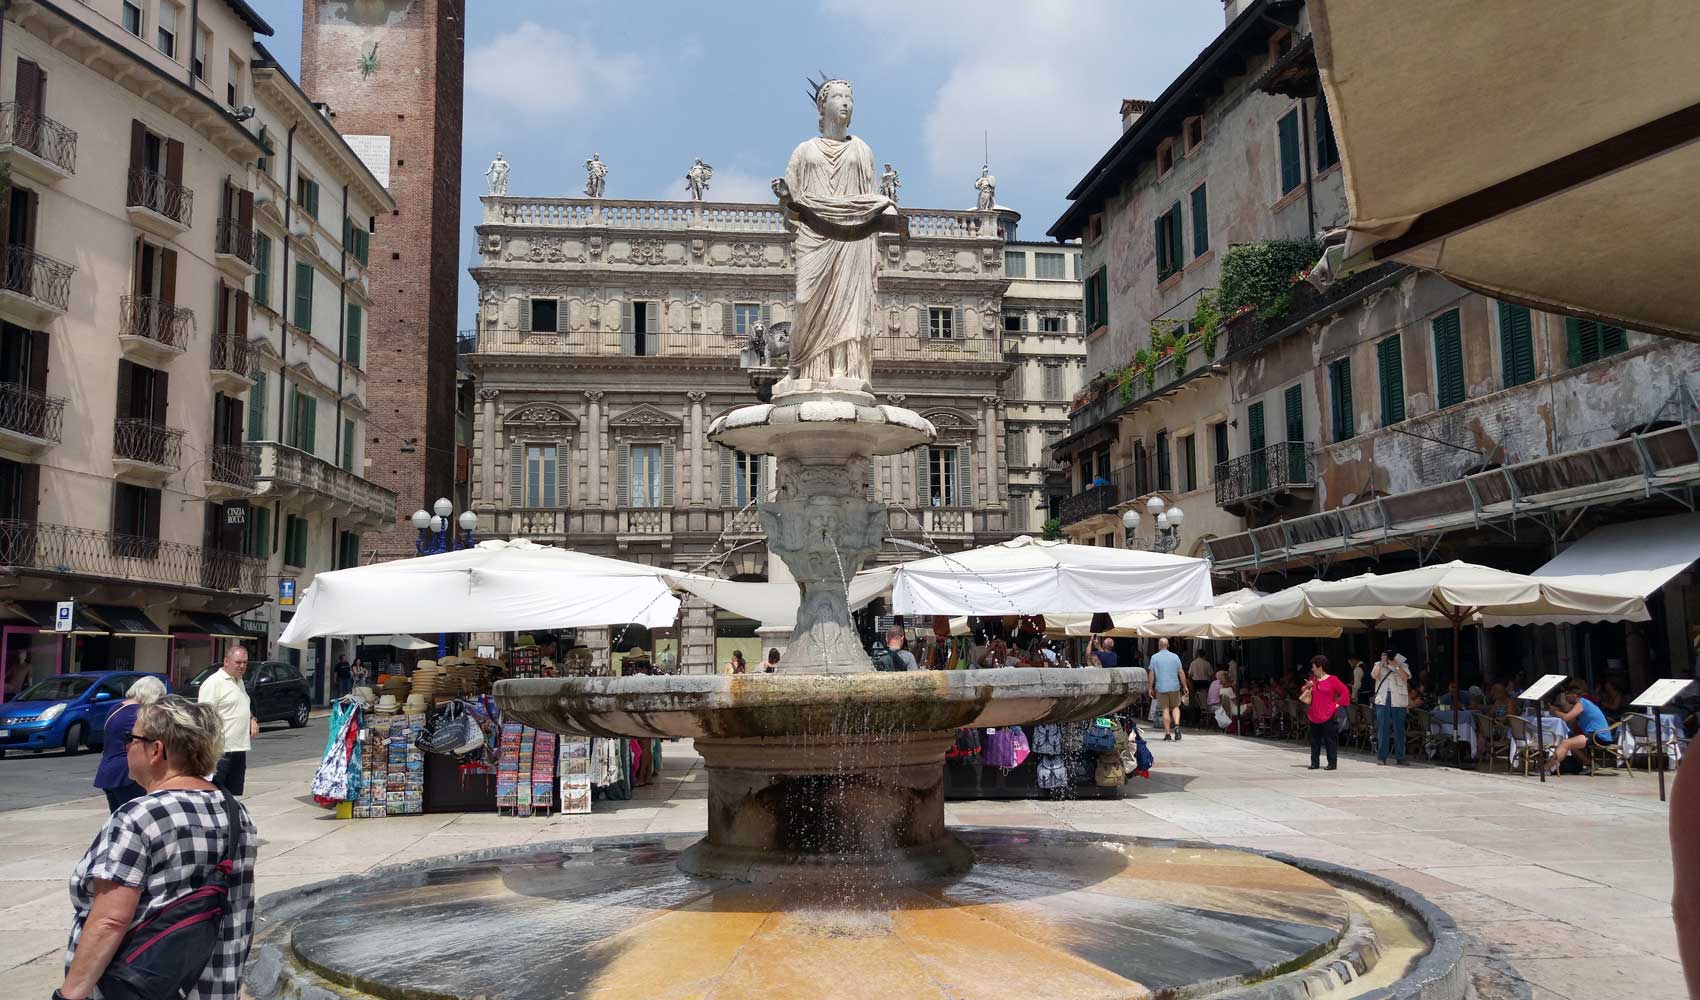 Die Piazza de la Erbe von Verona, ist der ehemalige Kräutermarkt aus dem Mittelalter und war Versammlungsplatz der Einwohner in der Antike.